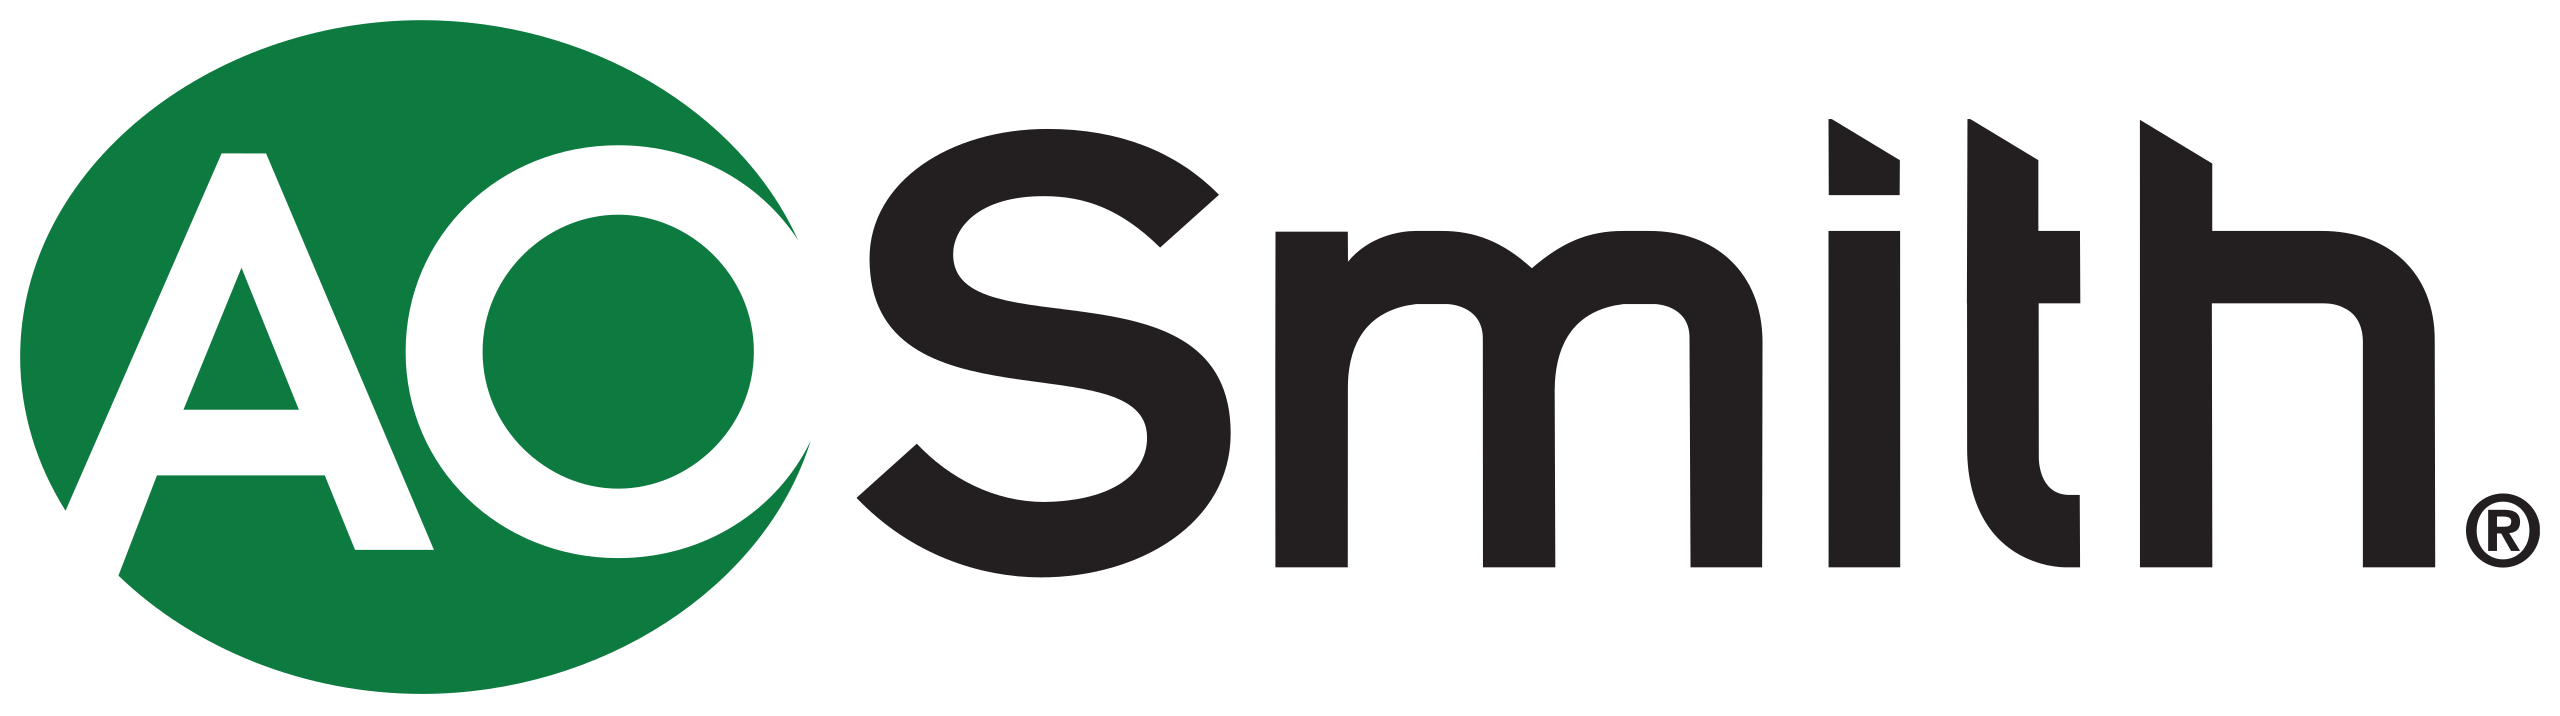 2560px-AO_Smith_logo.svg